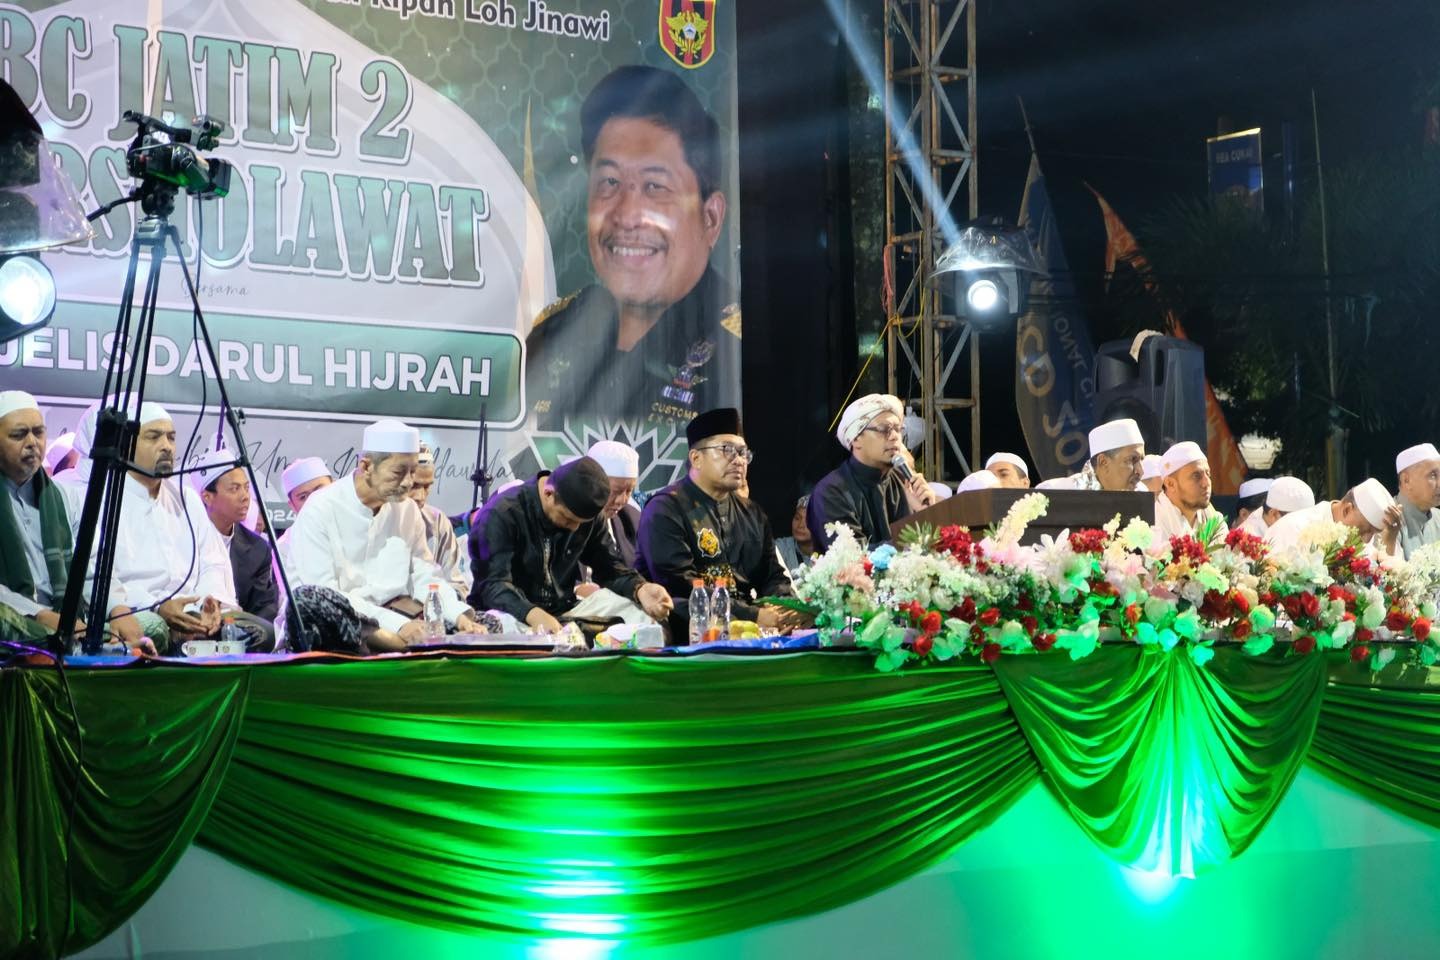 Kanwil DJBC Jawa Timur II menggelar acara Bea Cukai Jatim II bersholawat dengan tema Gemah Ripah Loh Jinawi dalam rangkaian Hari Pabean Internasional 2024. 